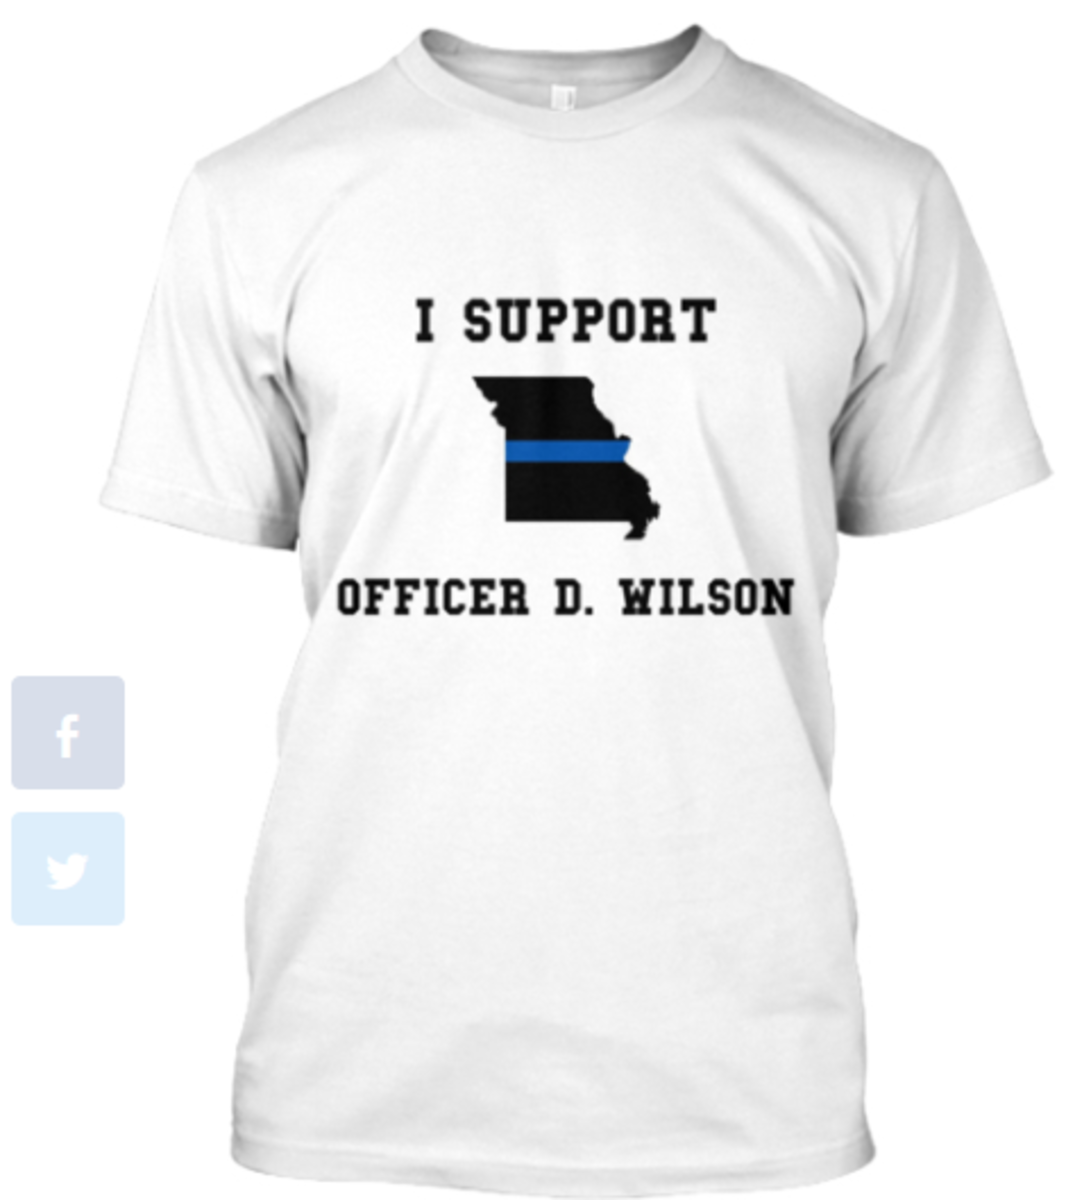 I SUPPORT OFFICER D. WILSON | Teespring 2014-09-14 20-06-49